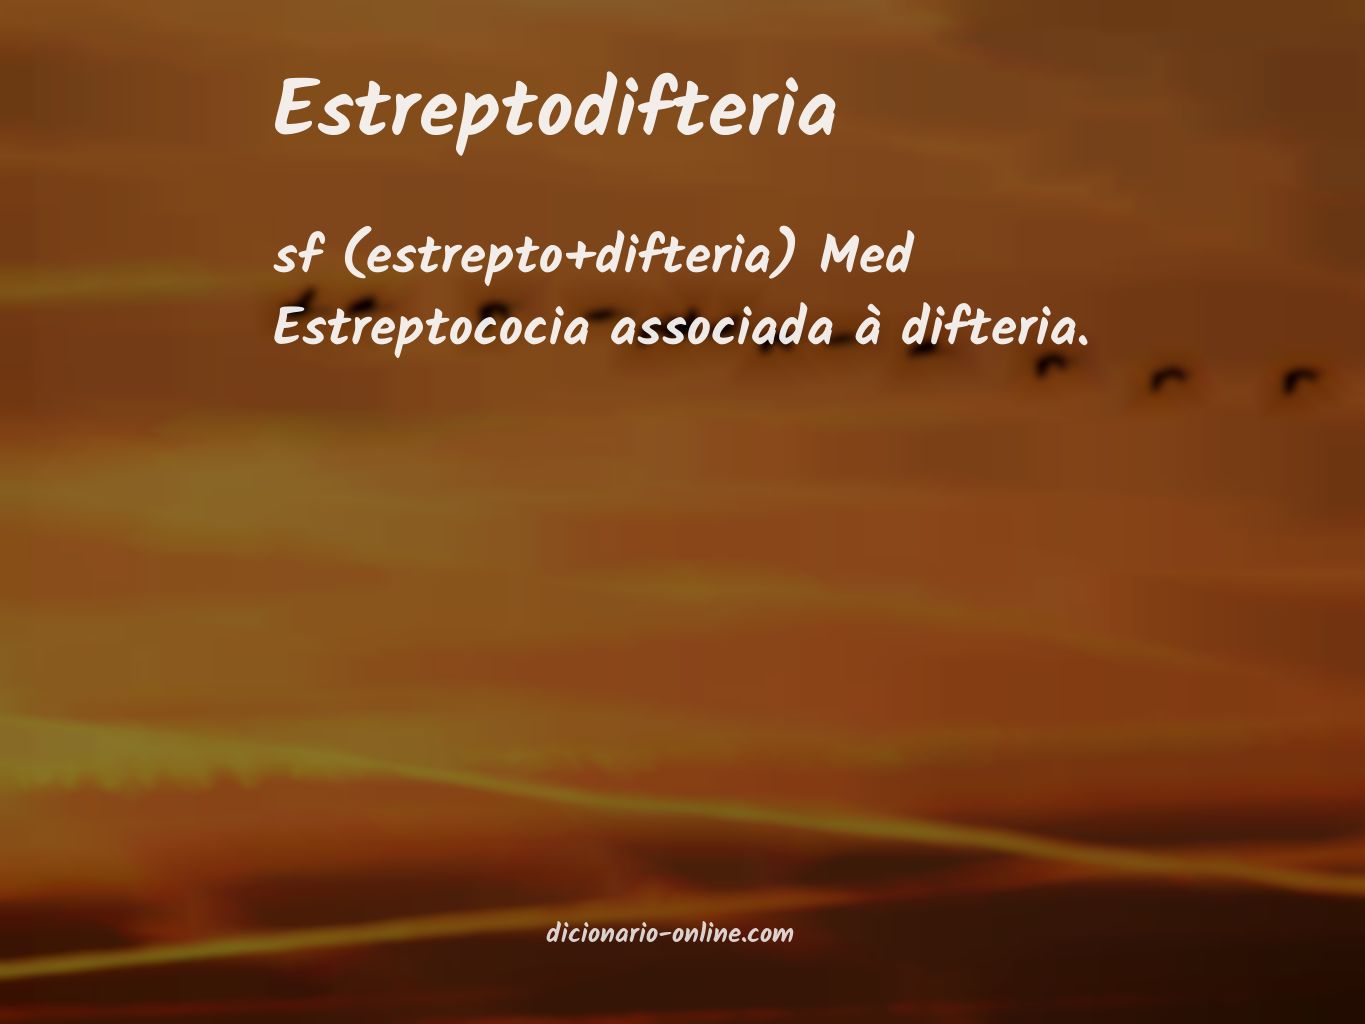 Significado de estreptodifteria